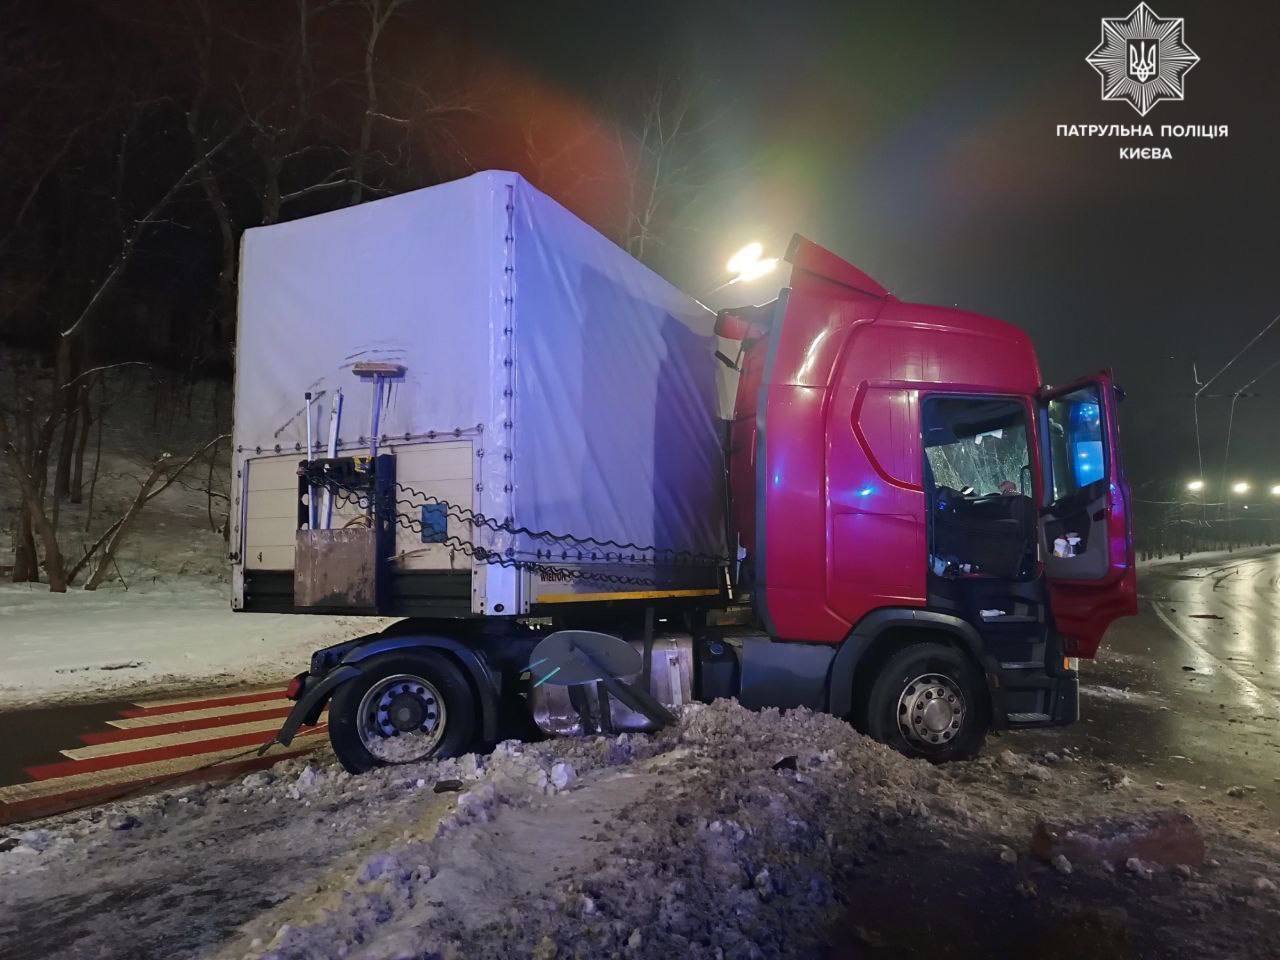 В Киеве на улице Телиги грузовик протаранил электроопору: есть пострадавший, возникла пробка. Фото и видео